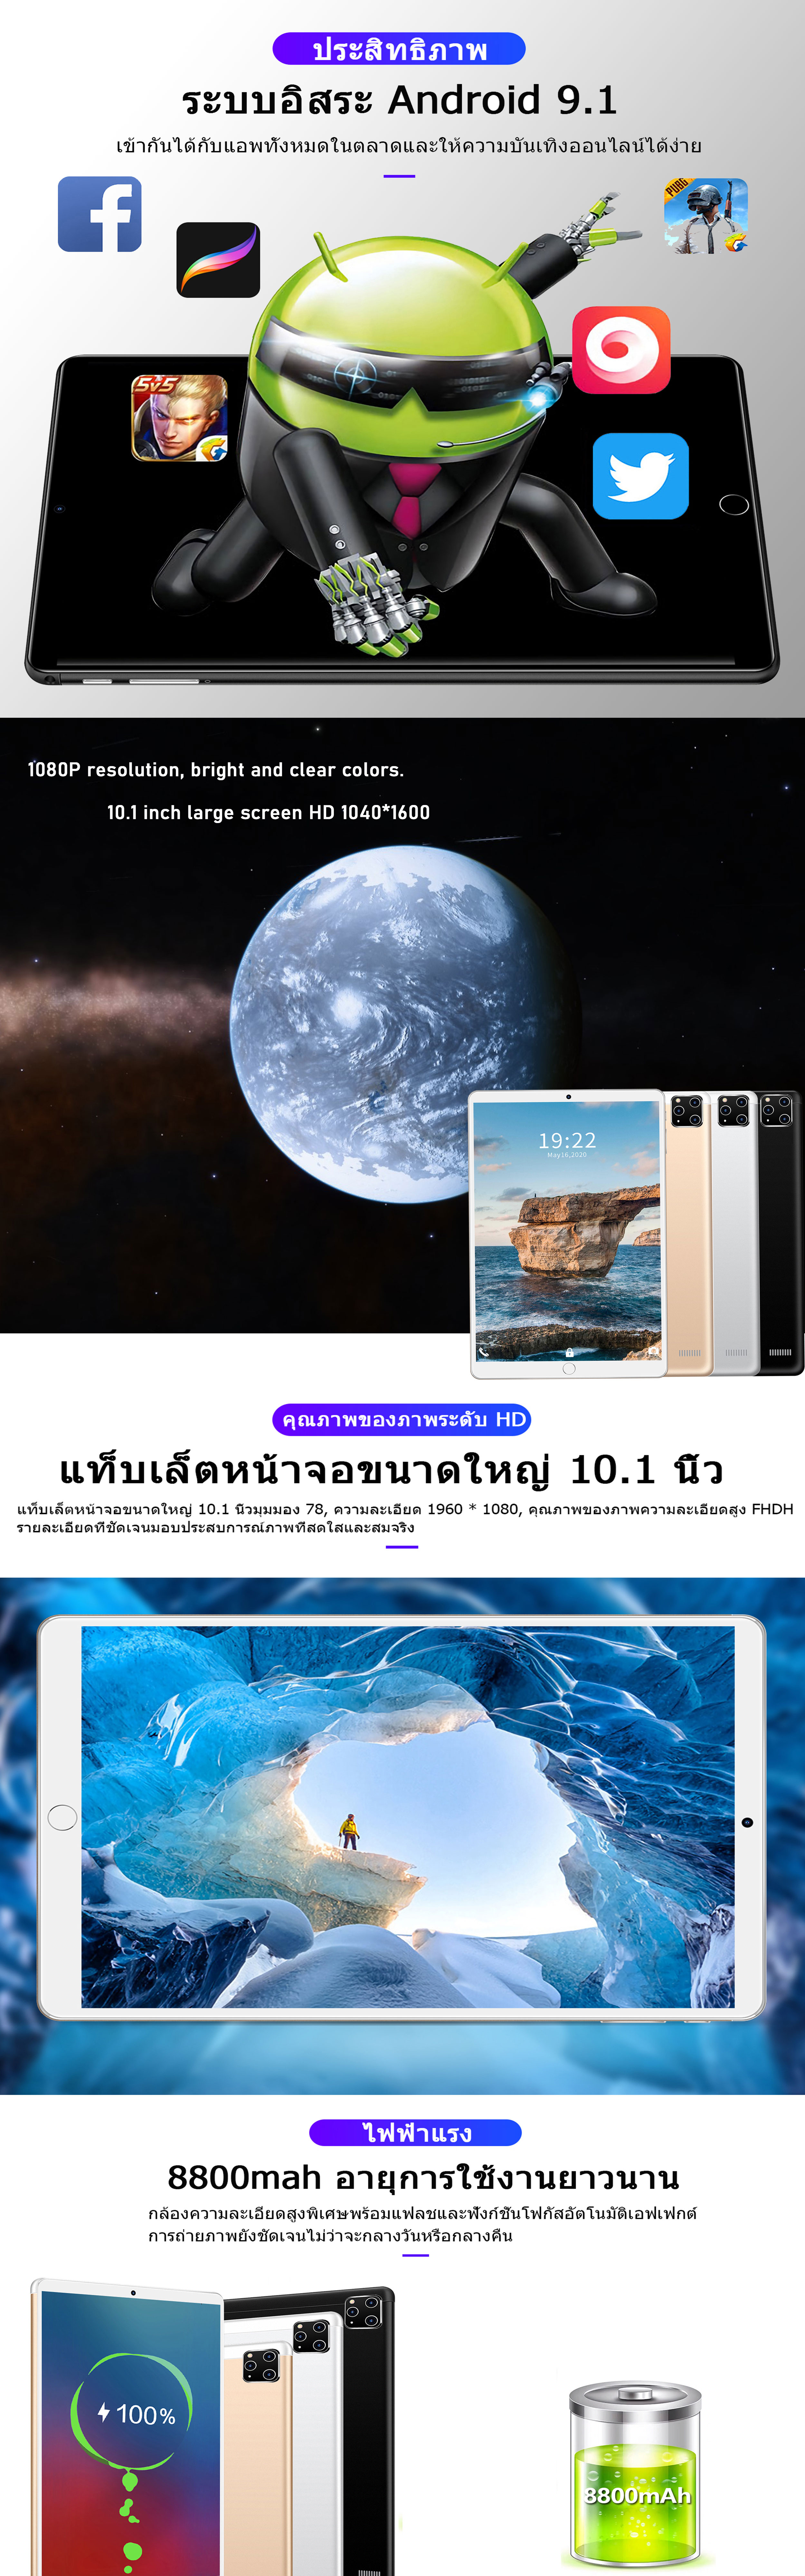 เกี่ยวกับสินค้า Thailand realmi แท็บเล็ตแท้ล่าสุดในปี 2022 แท็บเล็ตหน้าจอขนาดใหญ่ 10.1 นิ้วแท็บเล็ตราคาไม่แพงหน่วยความจำ 8+256GB แบตเตอรี่ 8800mah กล้อง 13+24MP การจดจำลาย